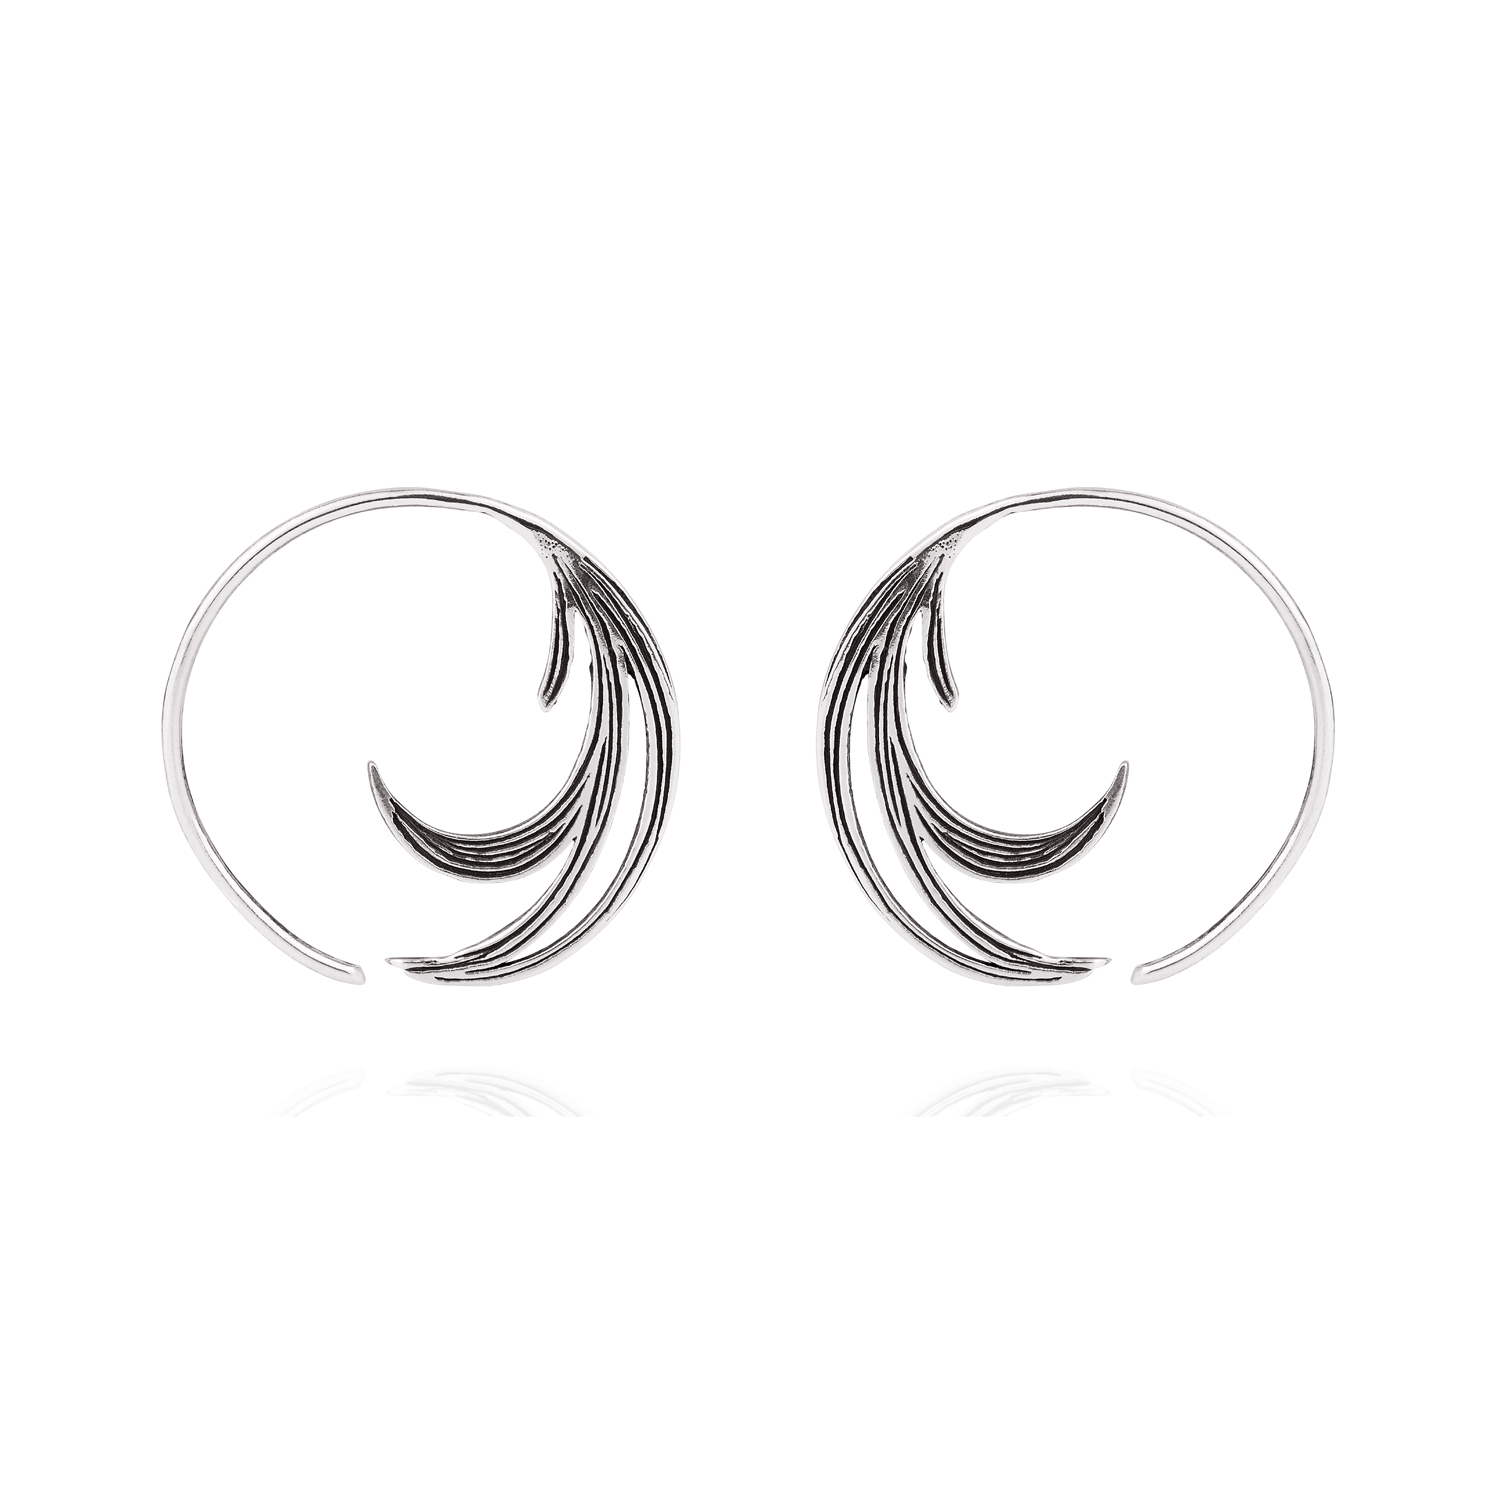 Duck feather earrings silver